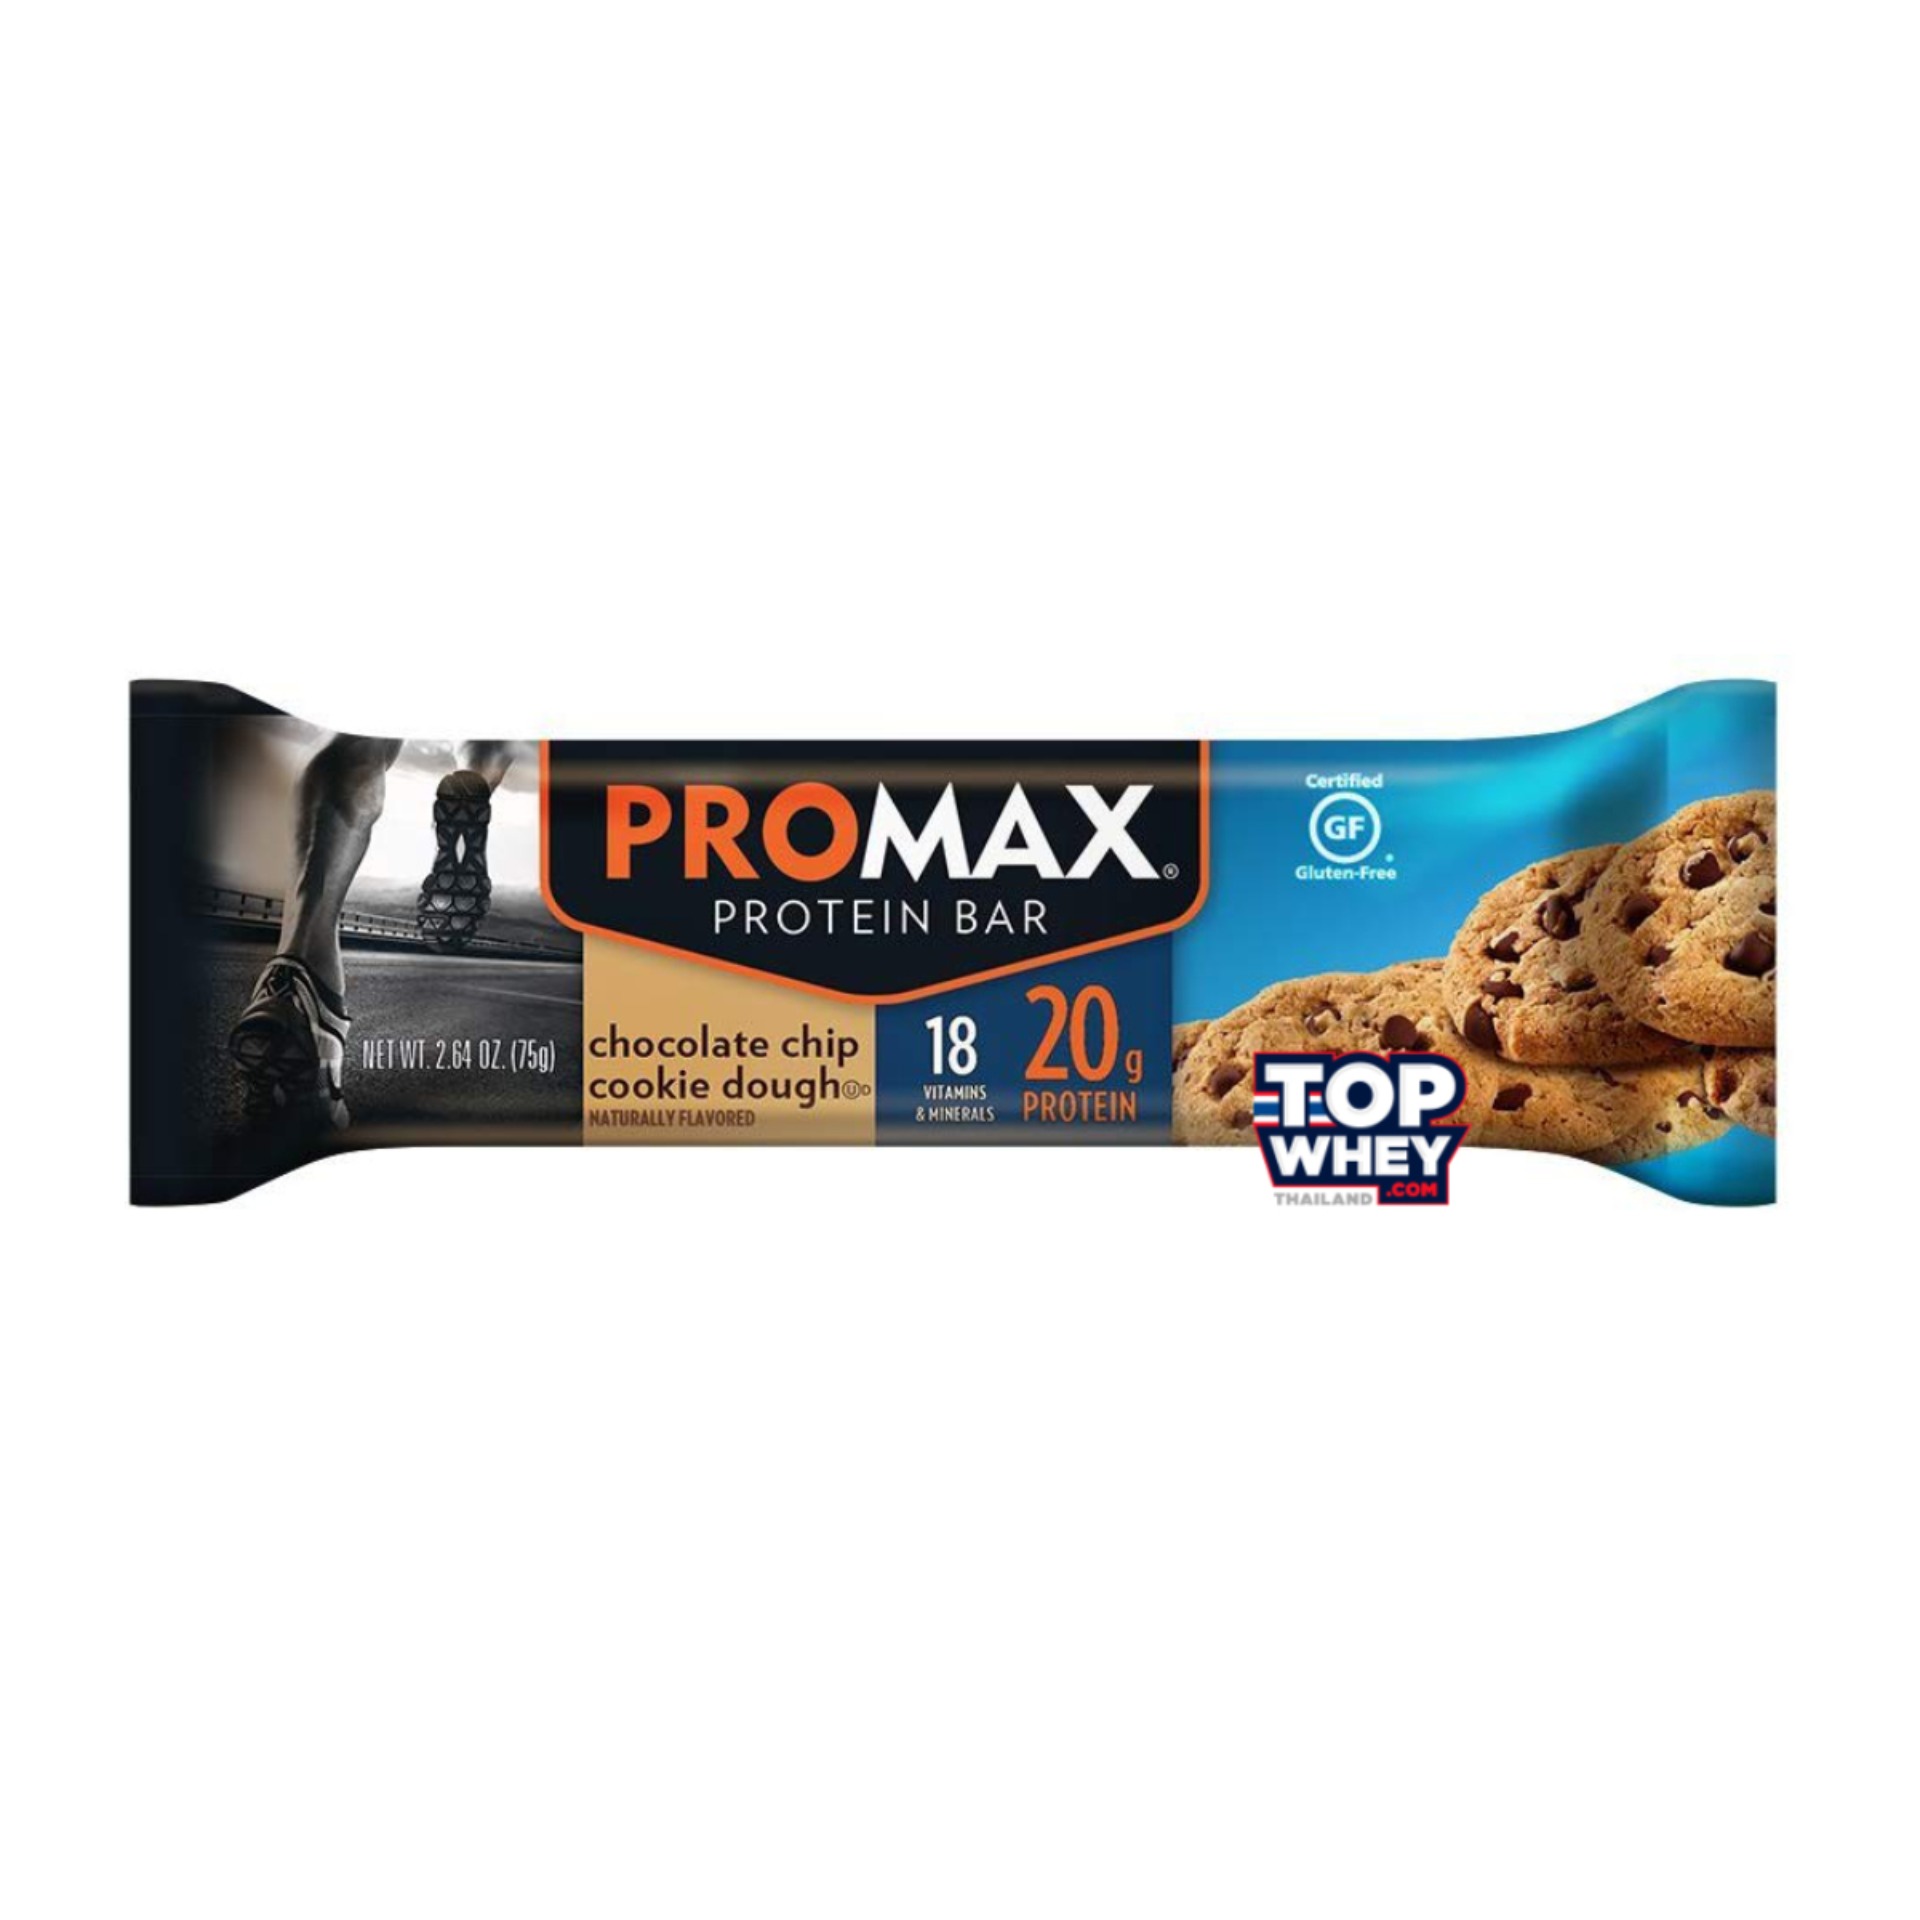 Promax Protein Bars - 1 Bar Chocolate Chip Cookie Dough  โปรตีนบาร์  มีส่วนผสมของเวย์โปรตีน  สามารถทานเล่น   หรือแทนมื้ออาหารได้  มีปริมาณของโปรตีนที่สูง